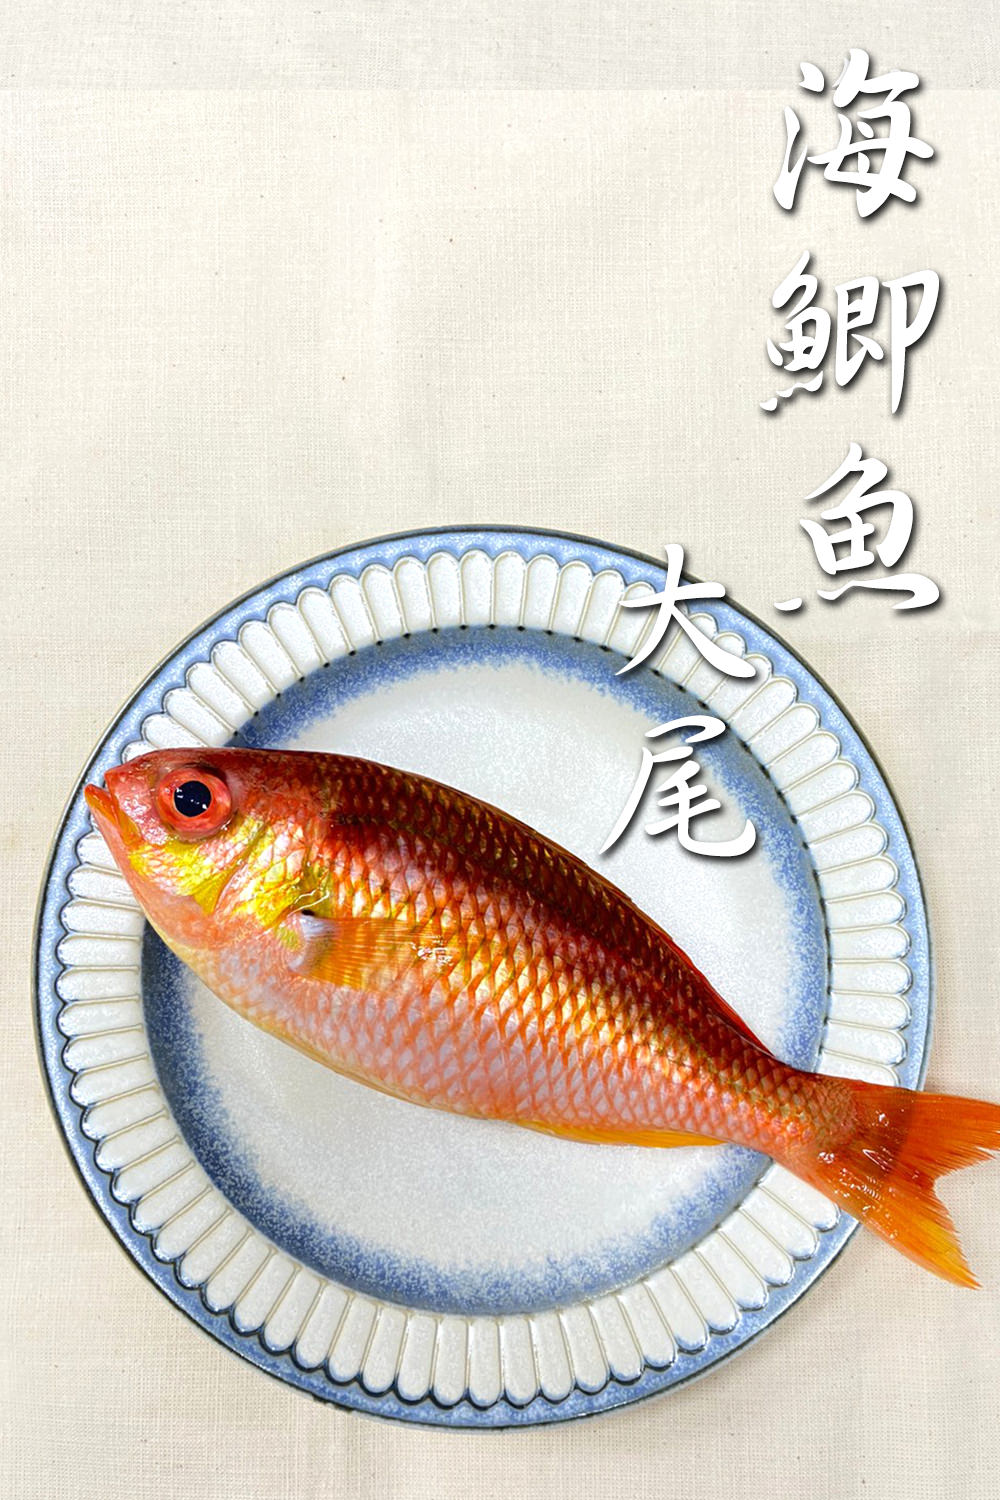 海鯽魚